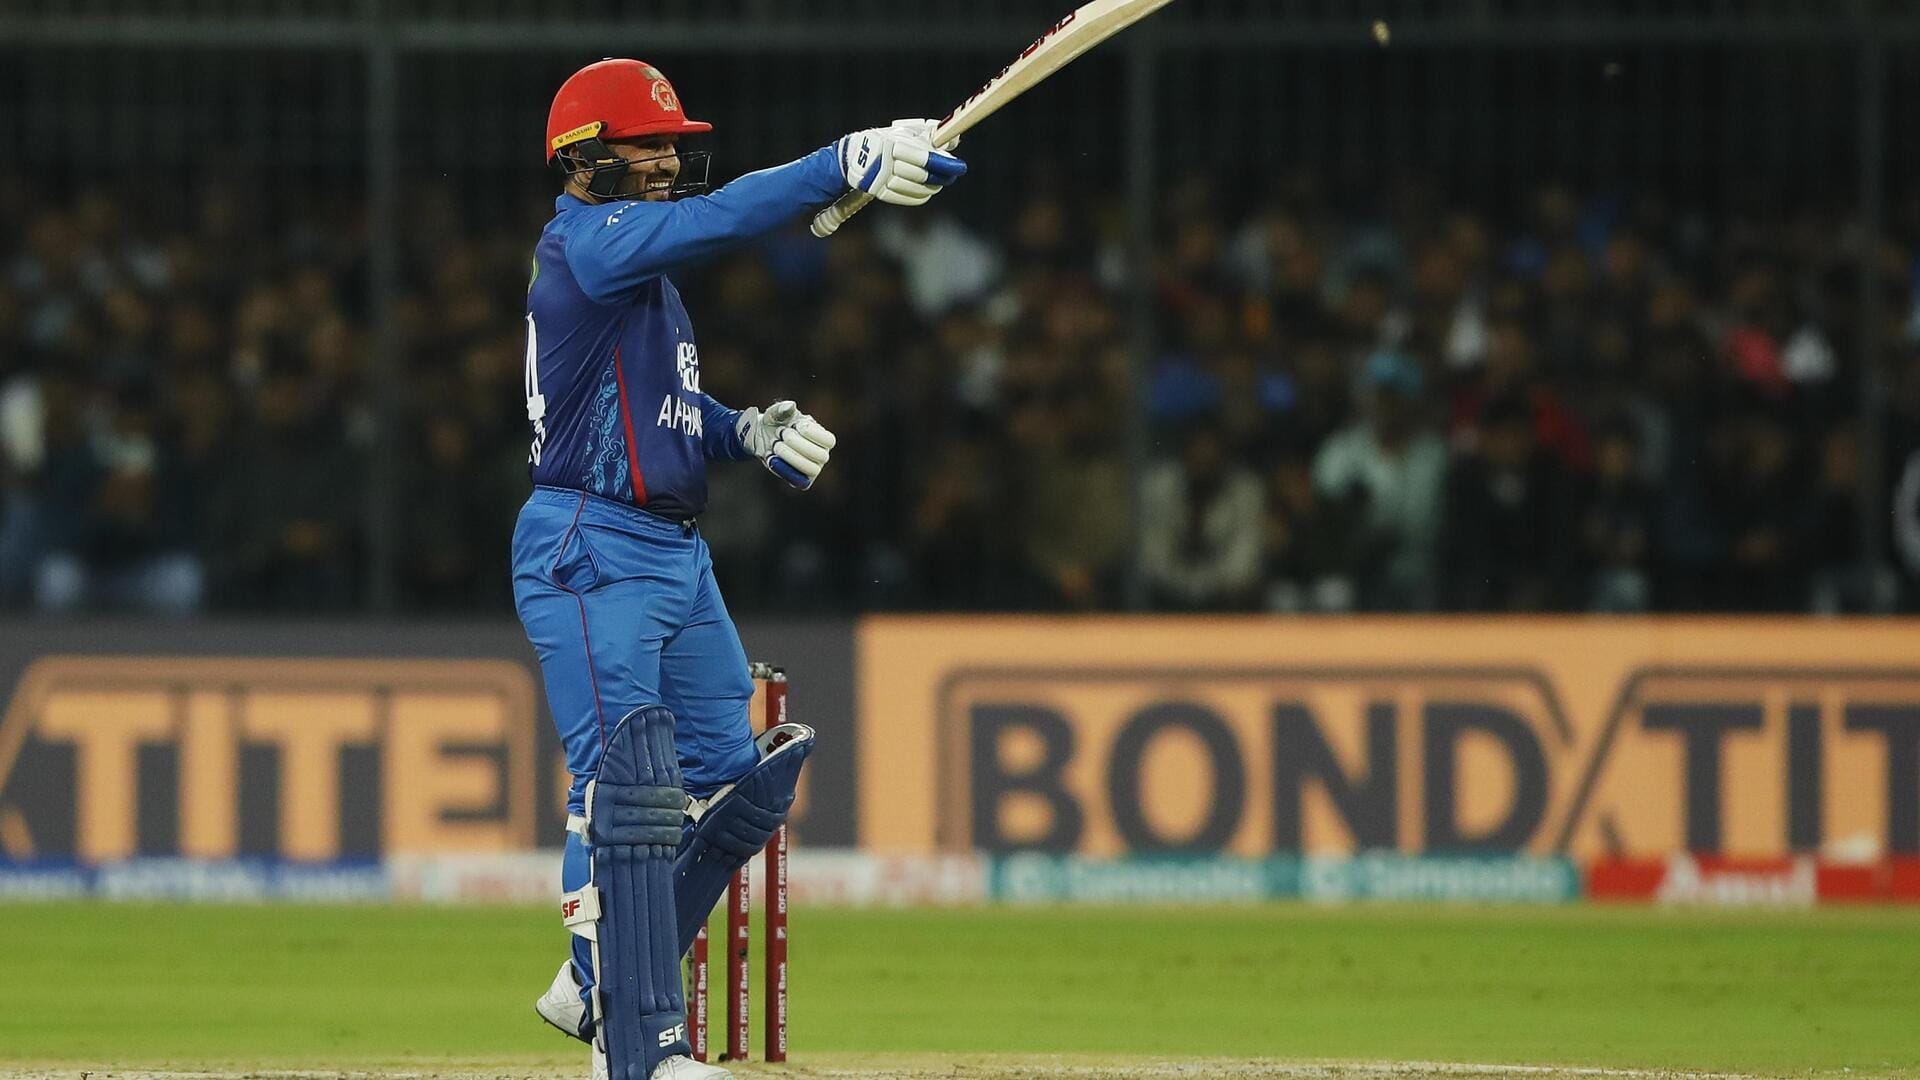 भारत बनाम अफगानिस्तान: गुलबदीन नायब ने खेली अपने टी-20 अंतरराष्ट्रीय करियर की सर्वश्रेष्ठ पारी, जानिए आंकड़े